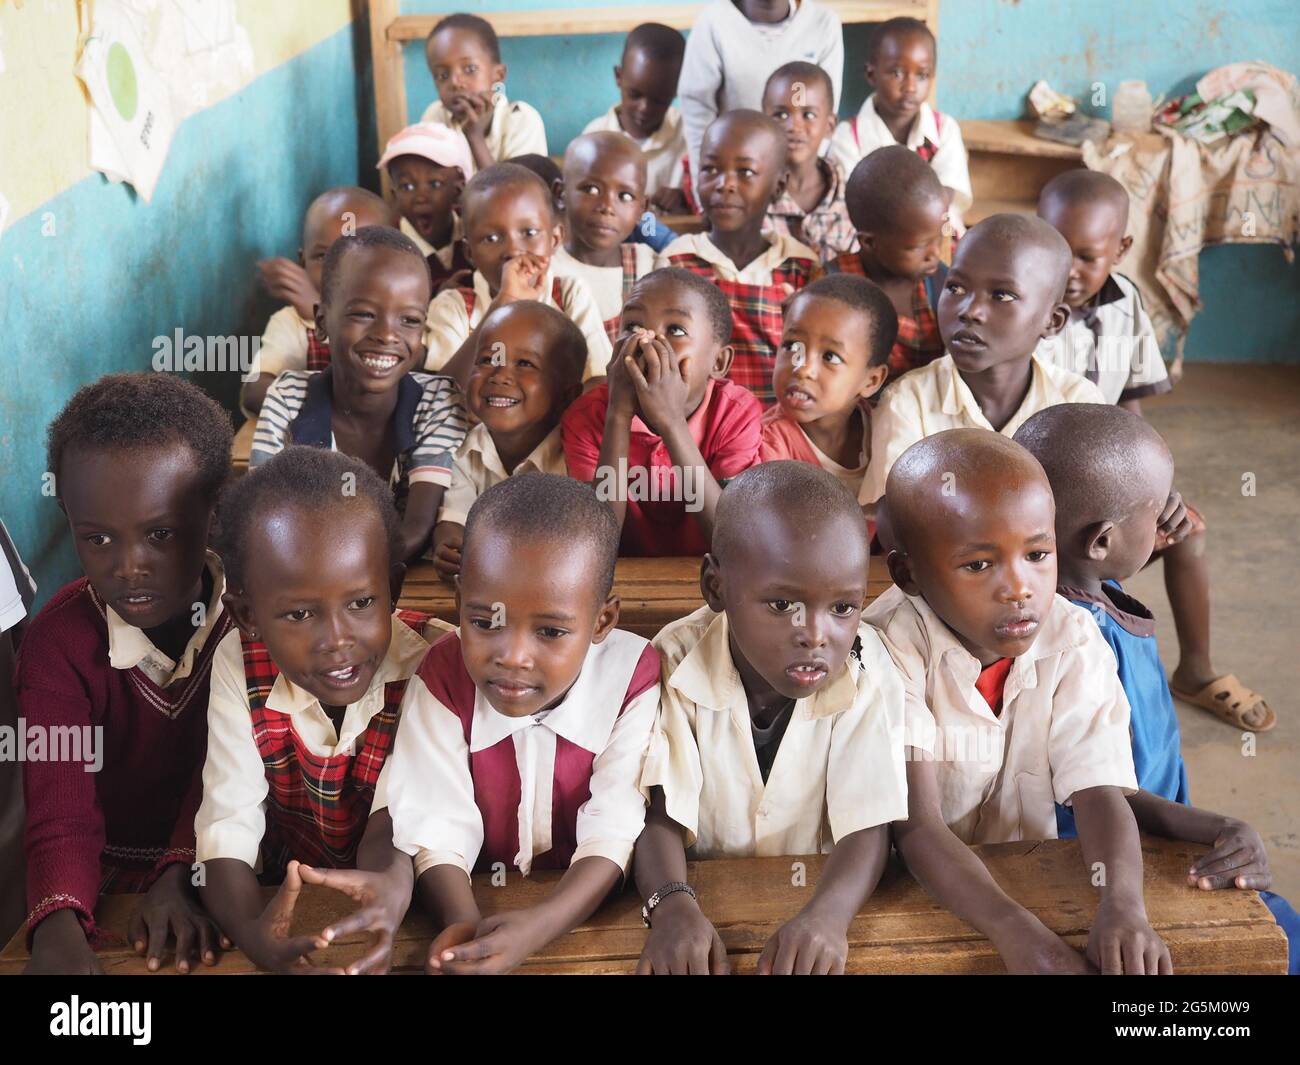 School class, school children in a village school, Umoja, Kenya, Africa Stock Photo